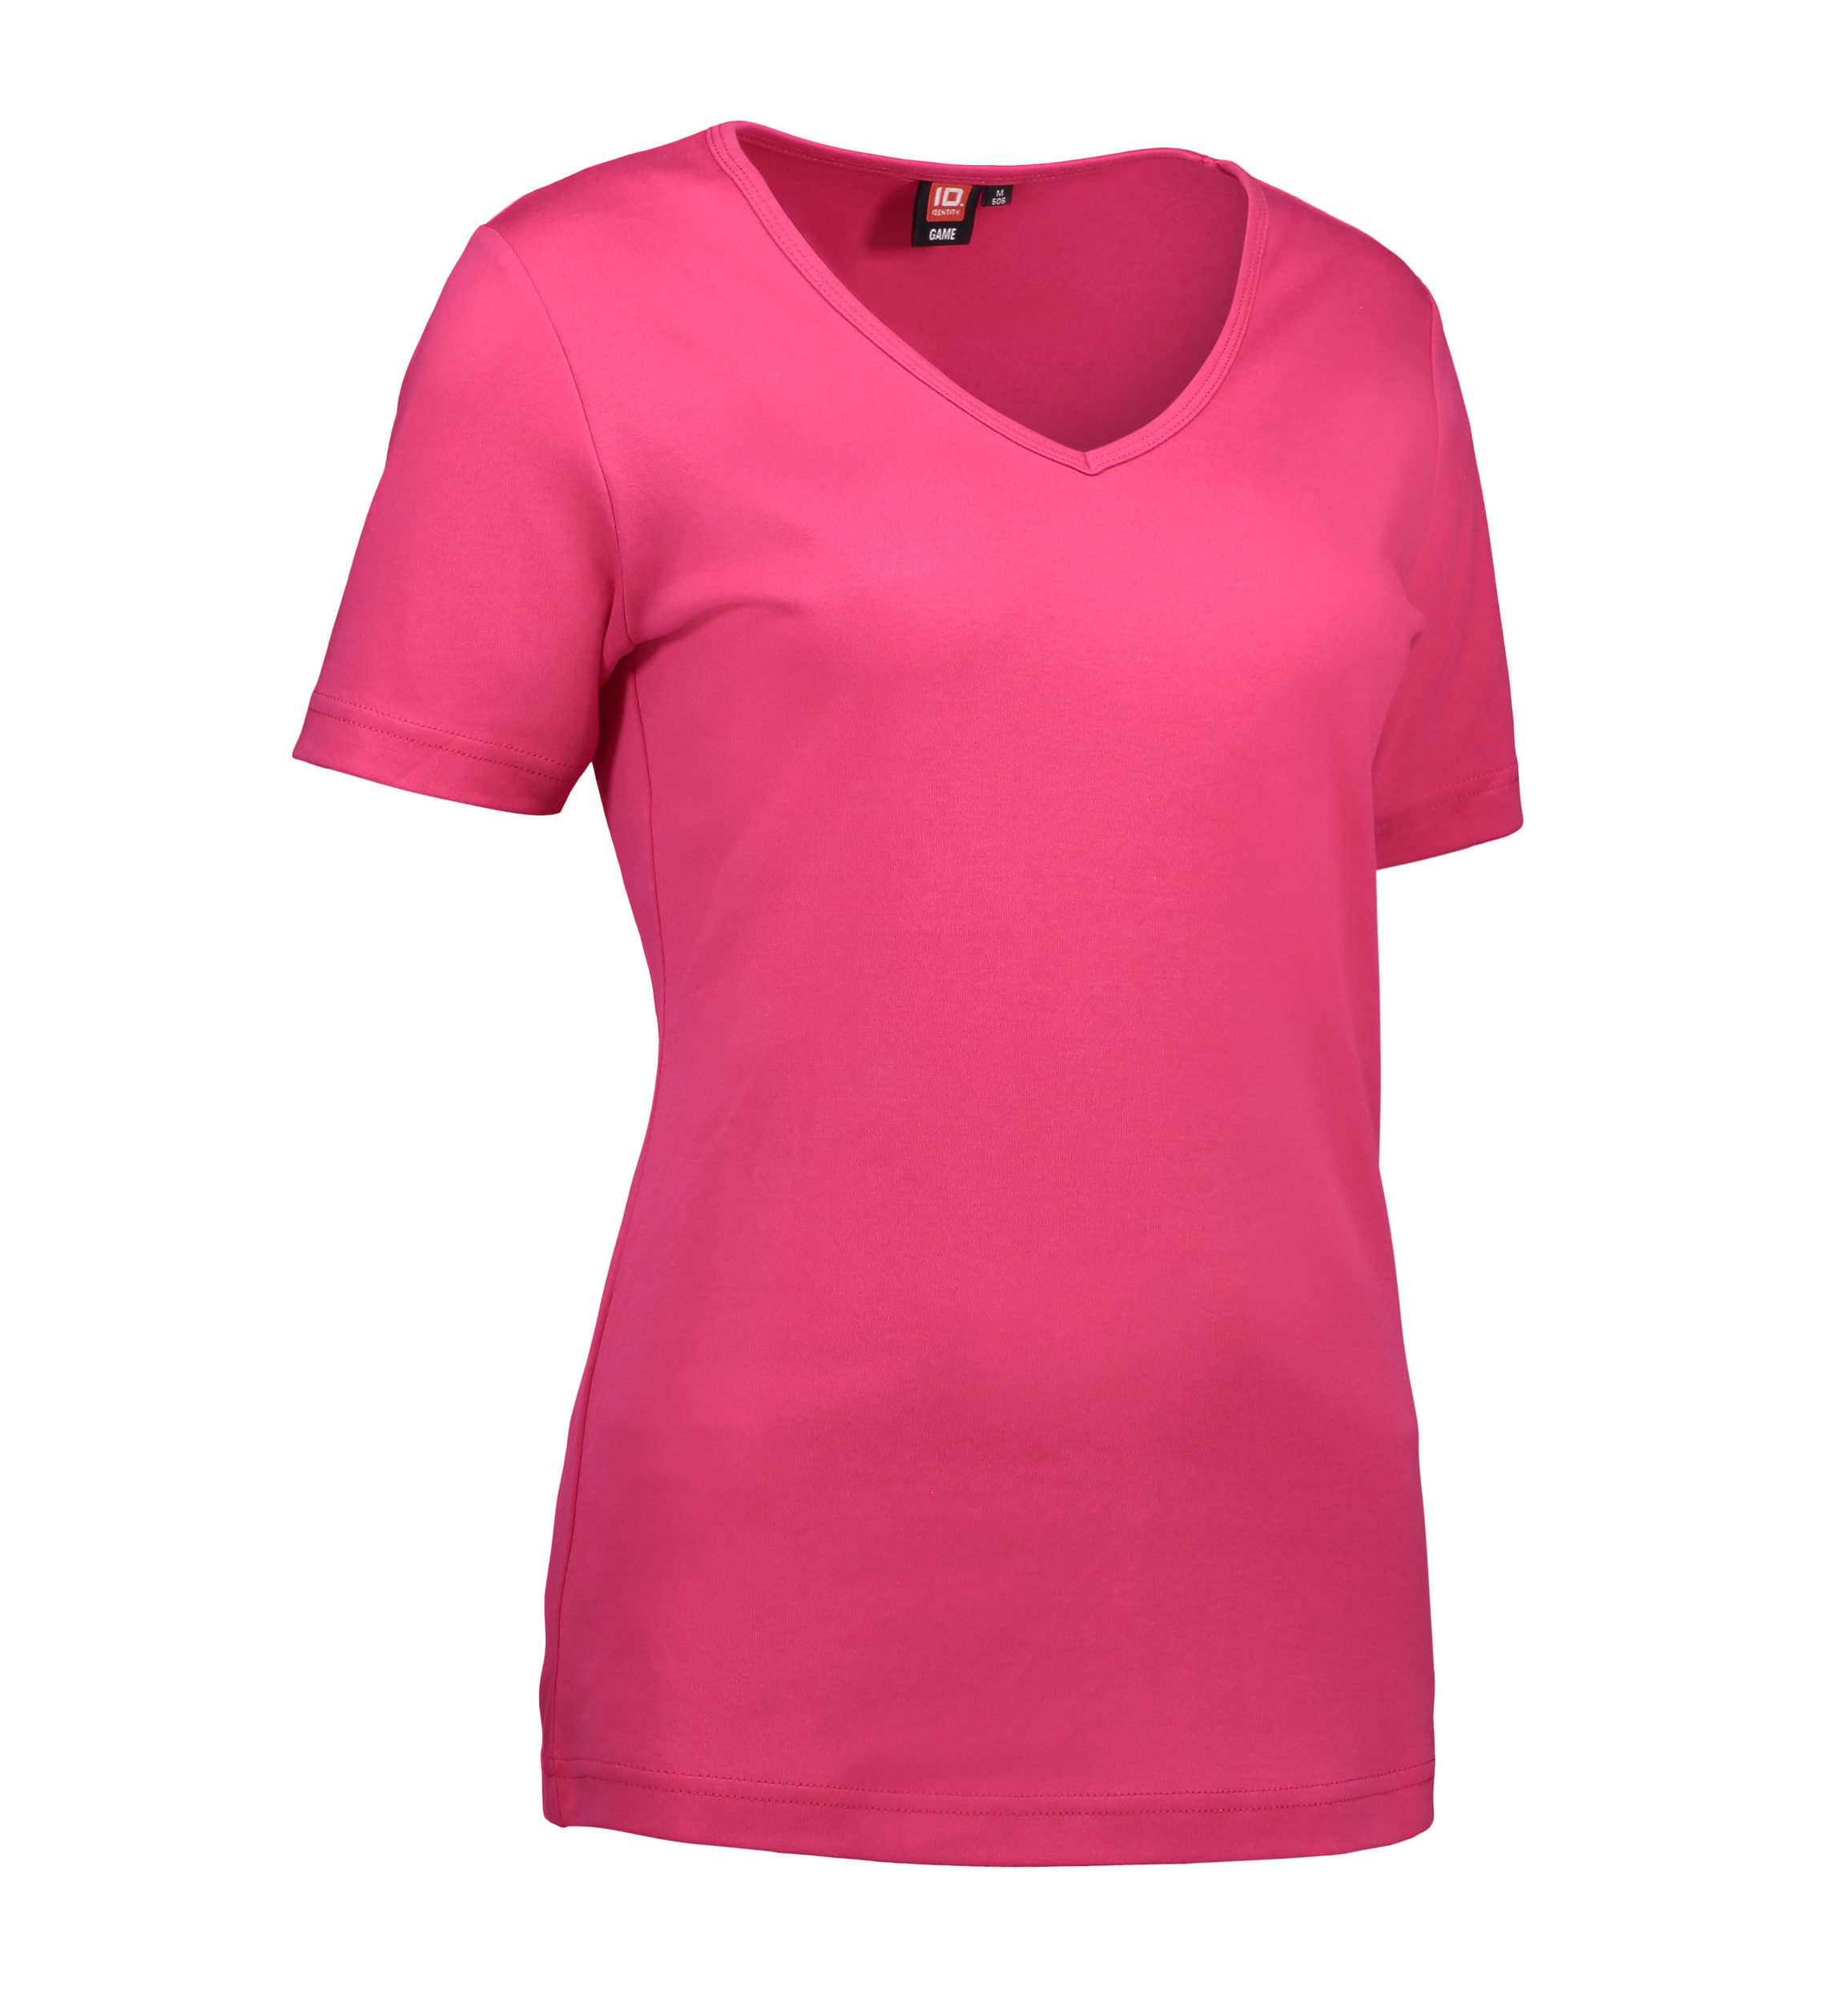 Billede af Pink dame t-shirt med v-hals - S hos Sygeplejebutikken.dk